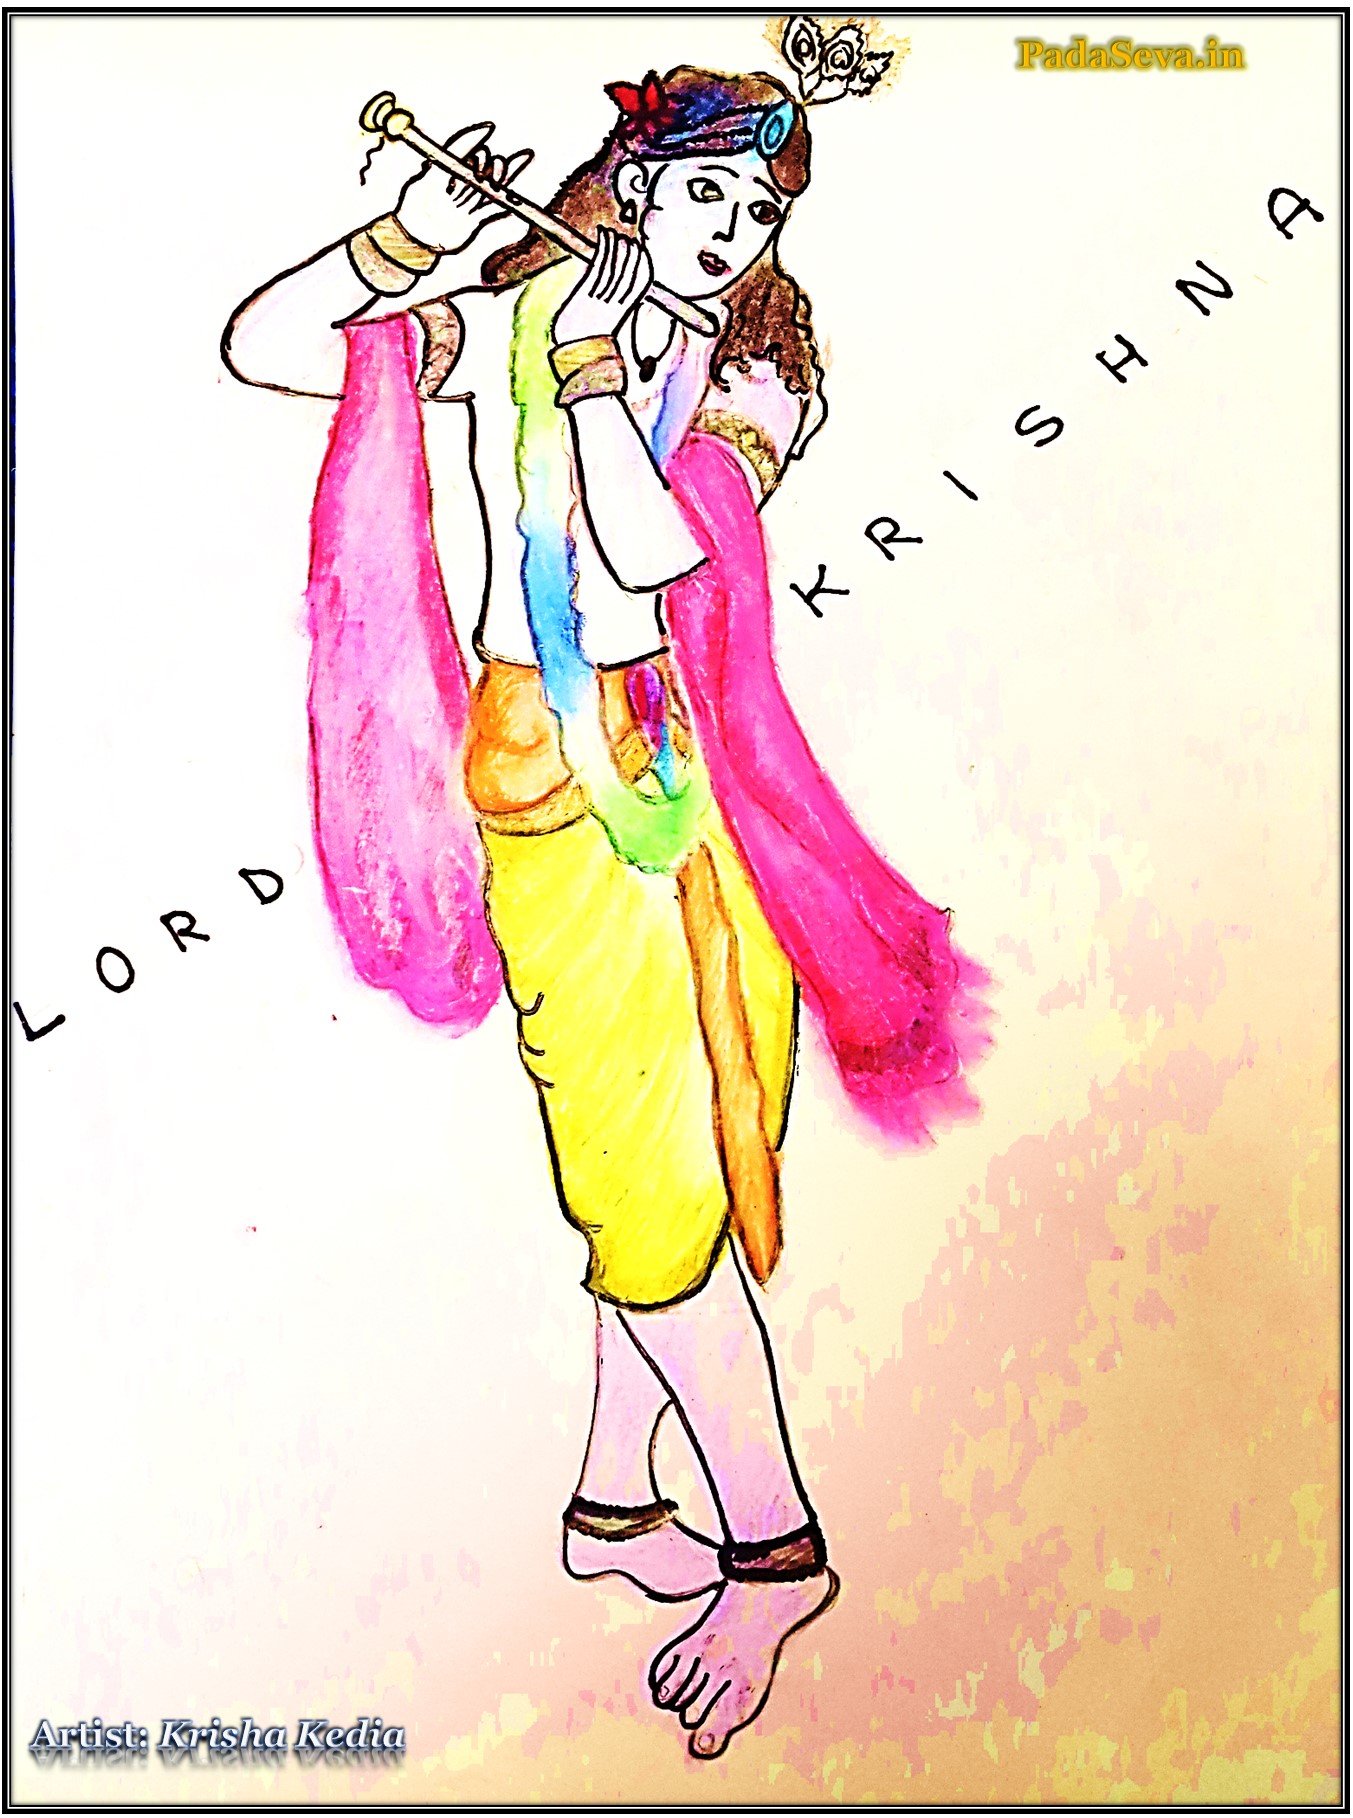 Buy Lord Krishna painting Artwork at Lowest Price By Kuldeep Singh